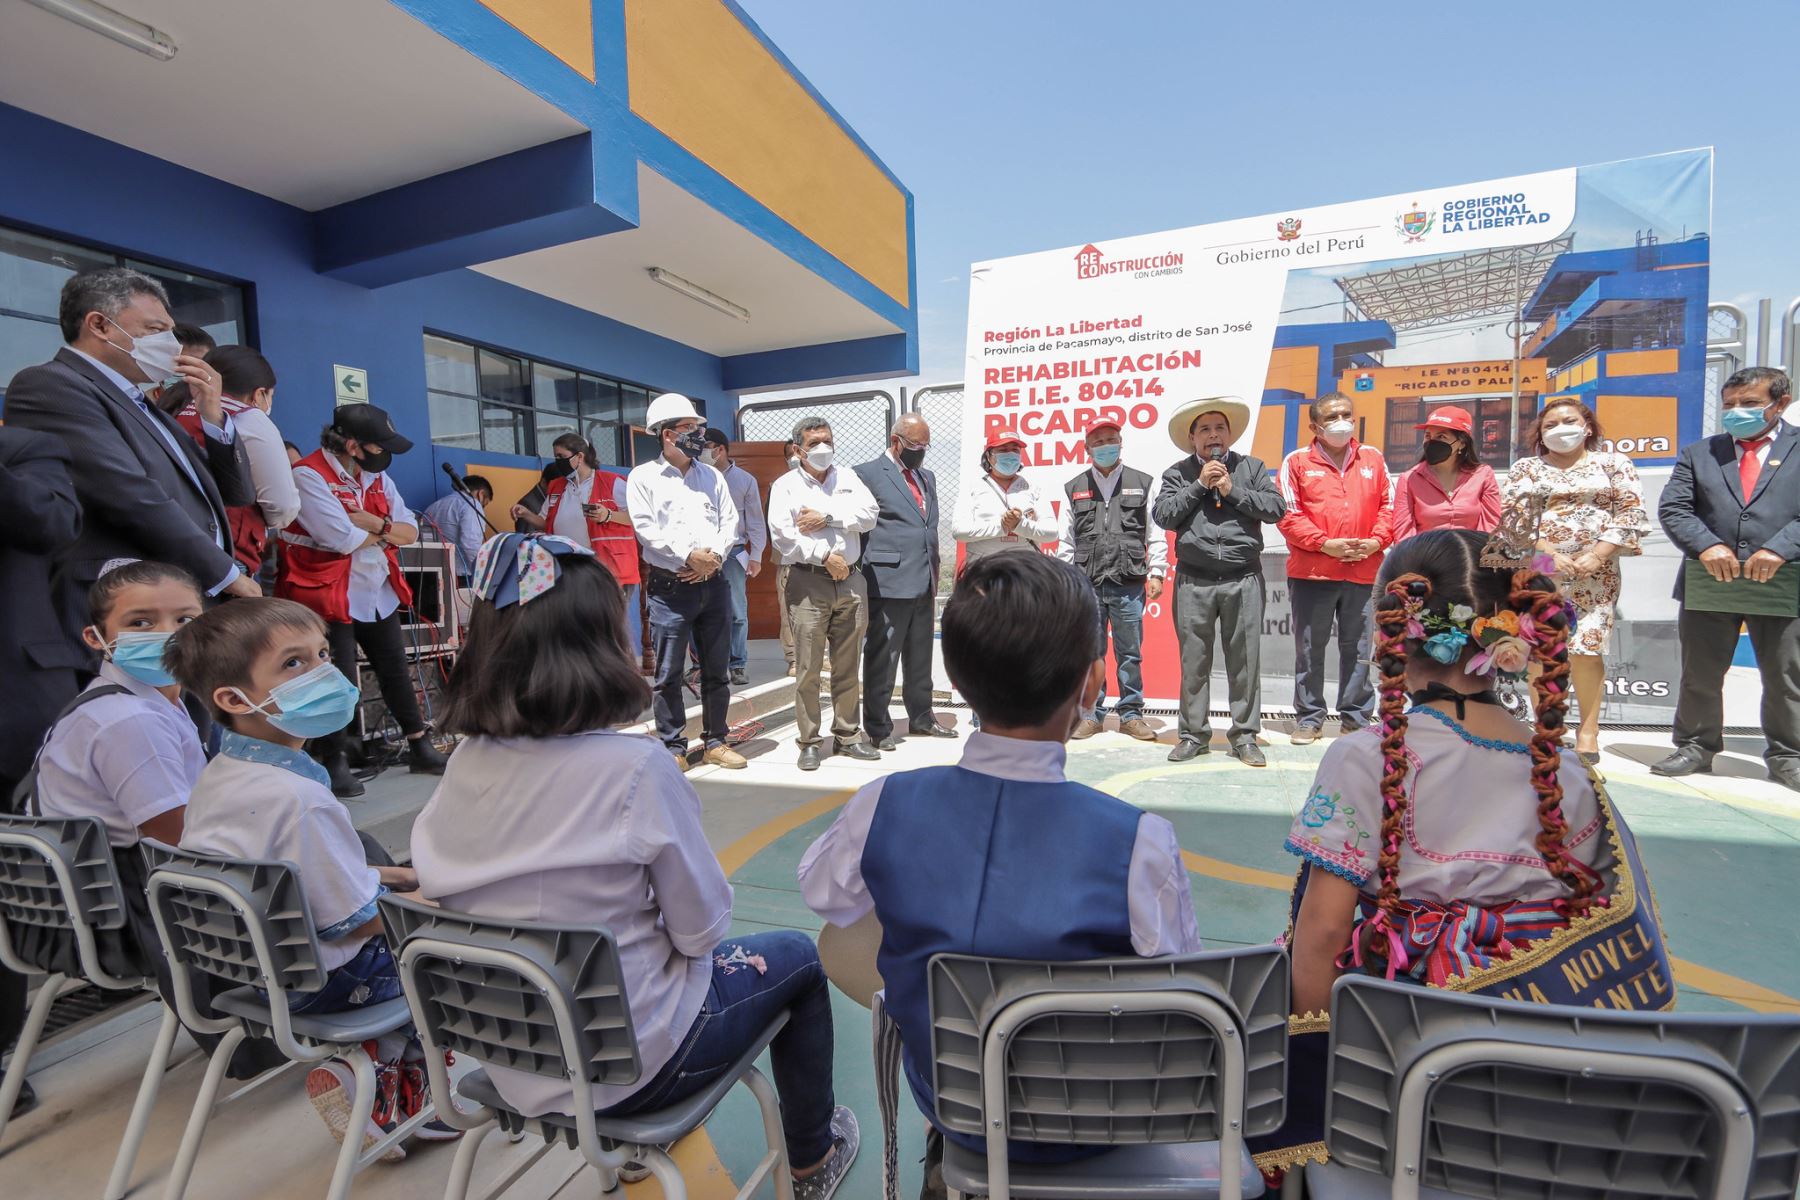 El presidente Pedro Castillo, inauguró local escolar 80414 Ricardo Palma, en el distrito de Pacasmayo, La Libertad.
Foto: ARCC